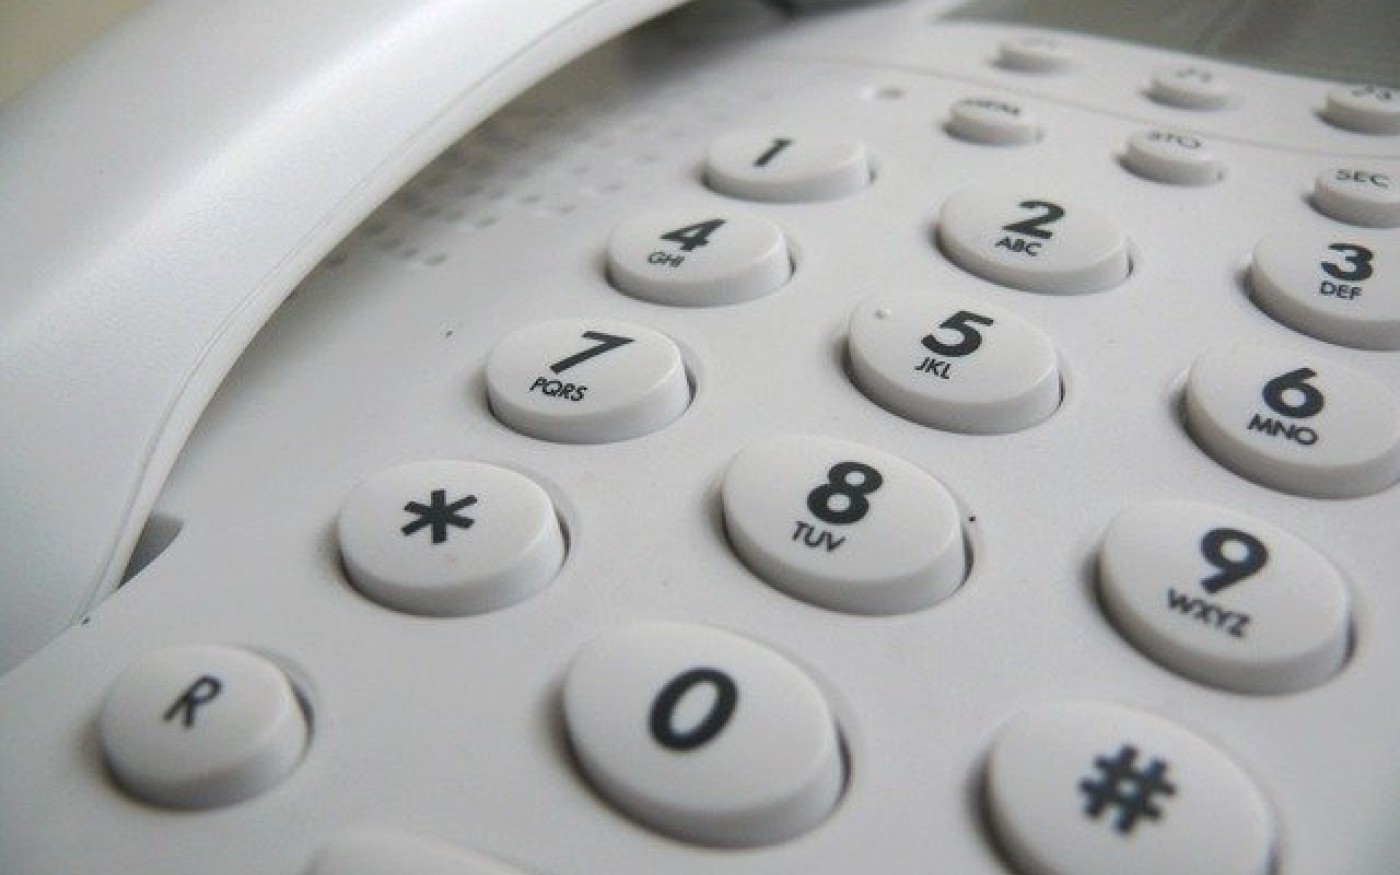 Gifhorns Sozialverband warnt vor Telefonbetrügern - Seniorenpaar aus Ehra gibt Bankdaten preis